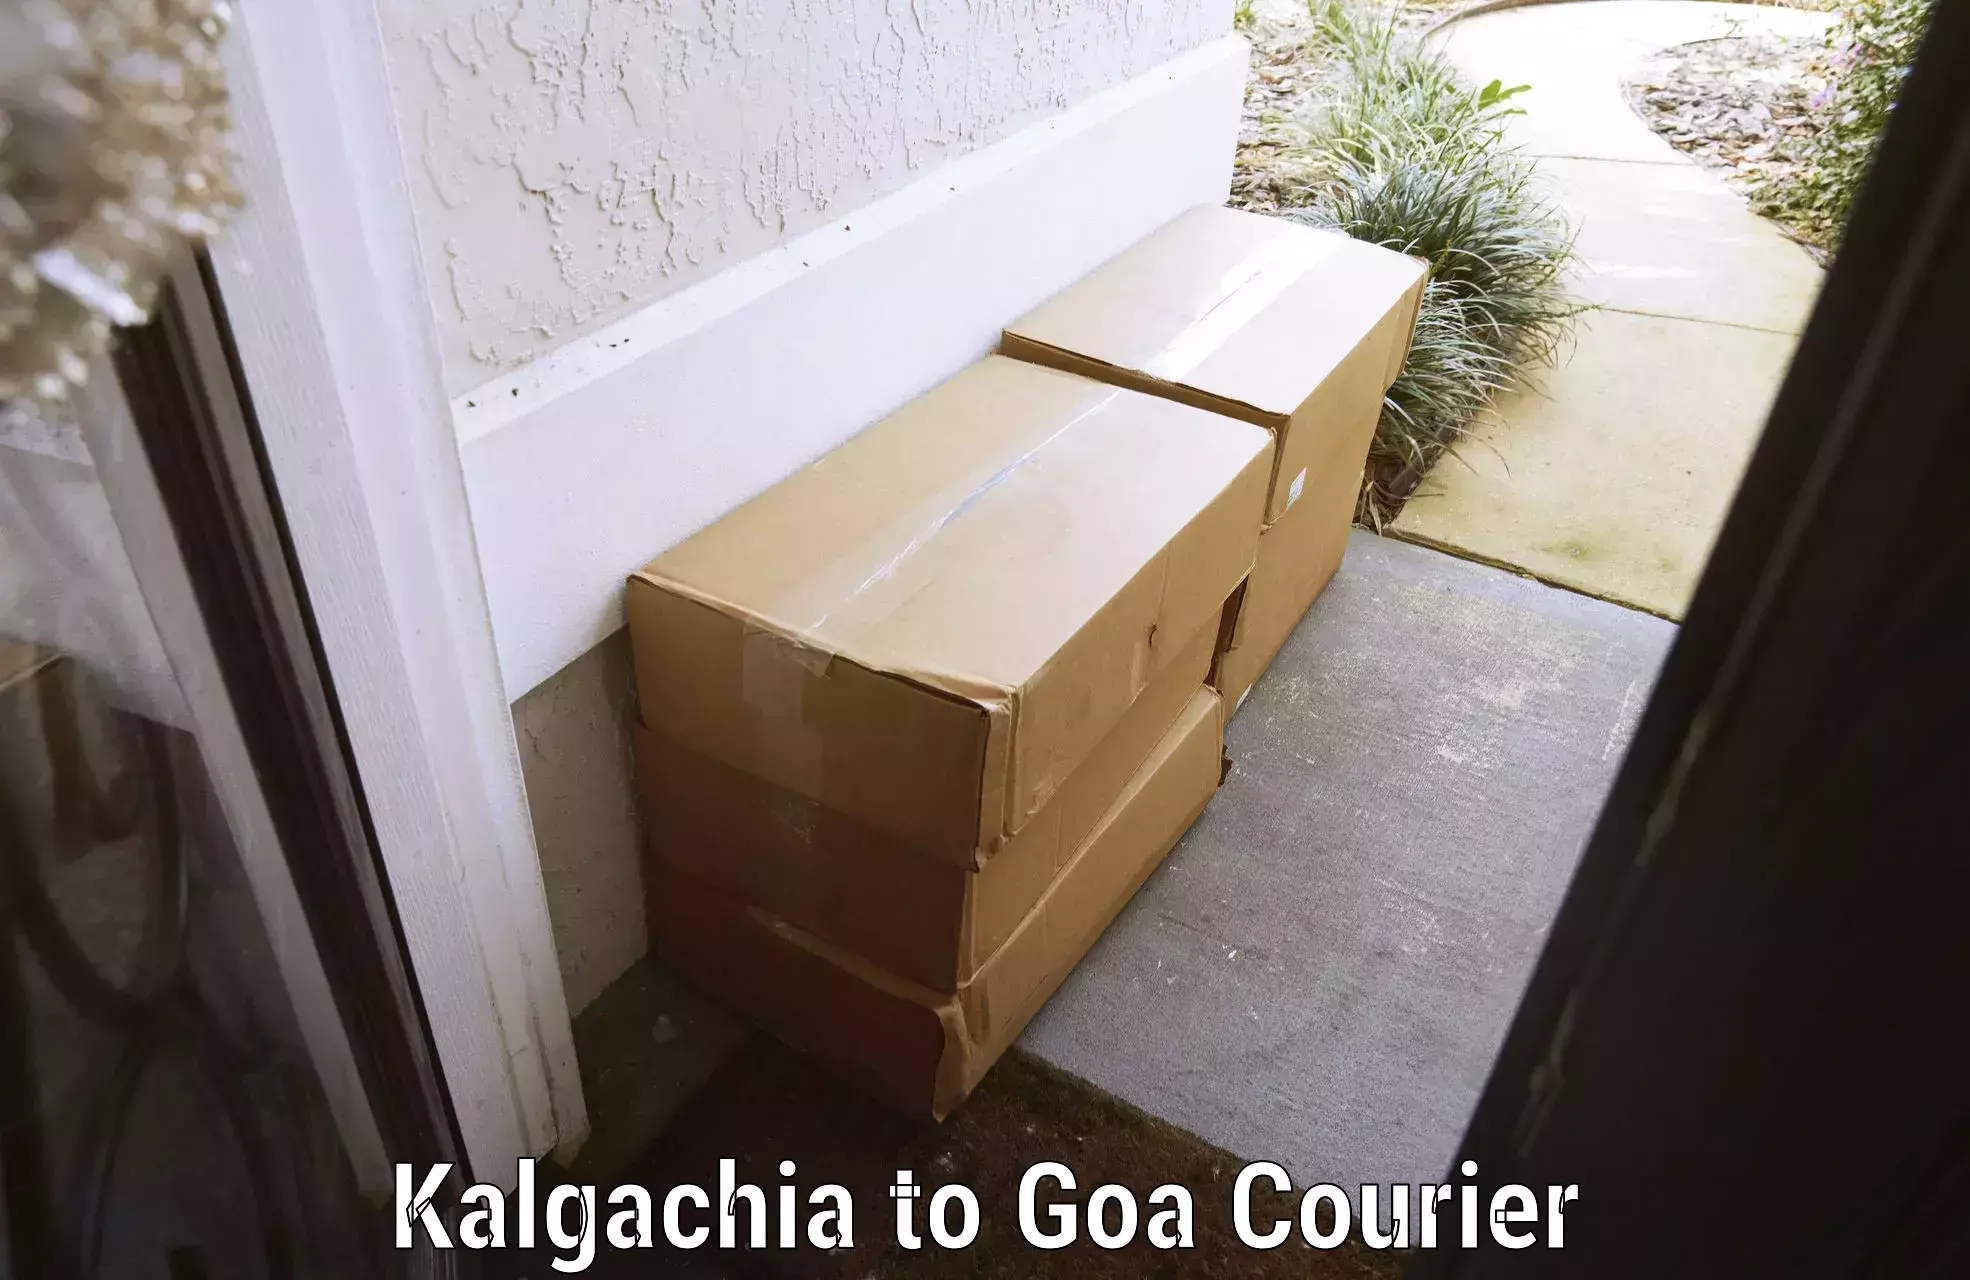 Luggage dispatch service in Kalgachia to Goa